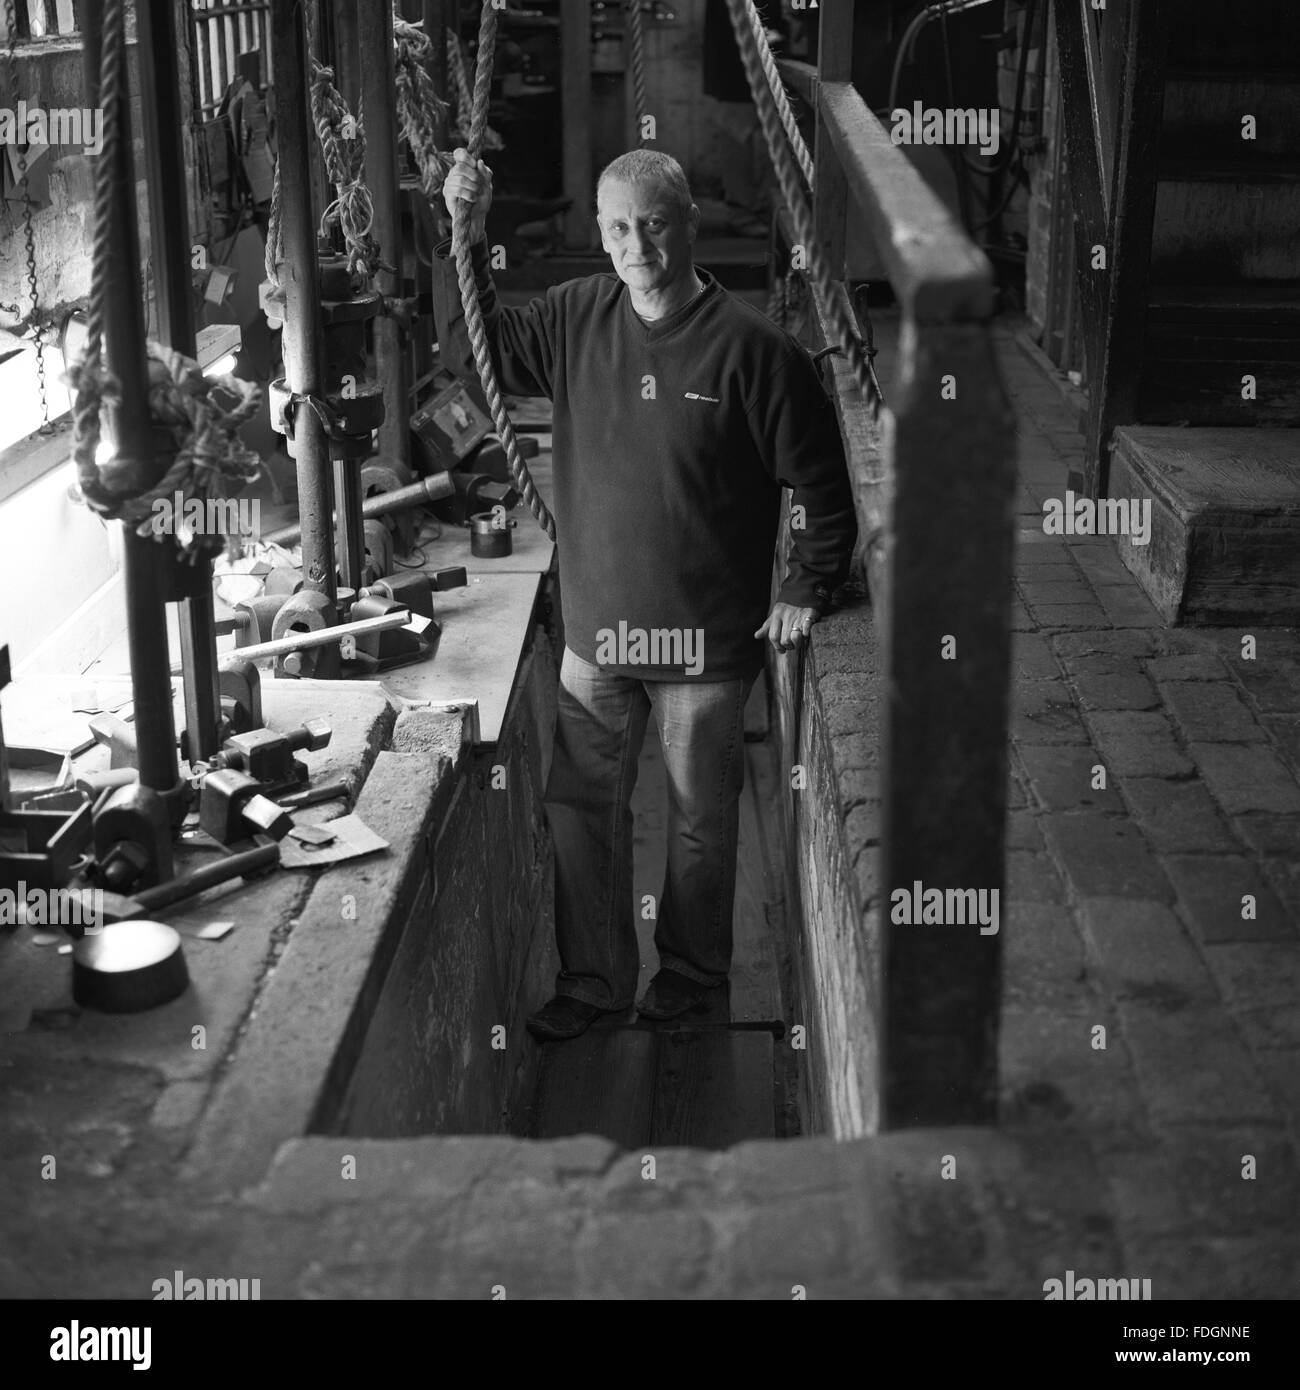 W Downing, Badge Hersteller, Jewellery Quarter, Birmingham. Mitarbeiter Mark ist auf dem Würfel Stanz-Maschine abgebildet. Stockfoto